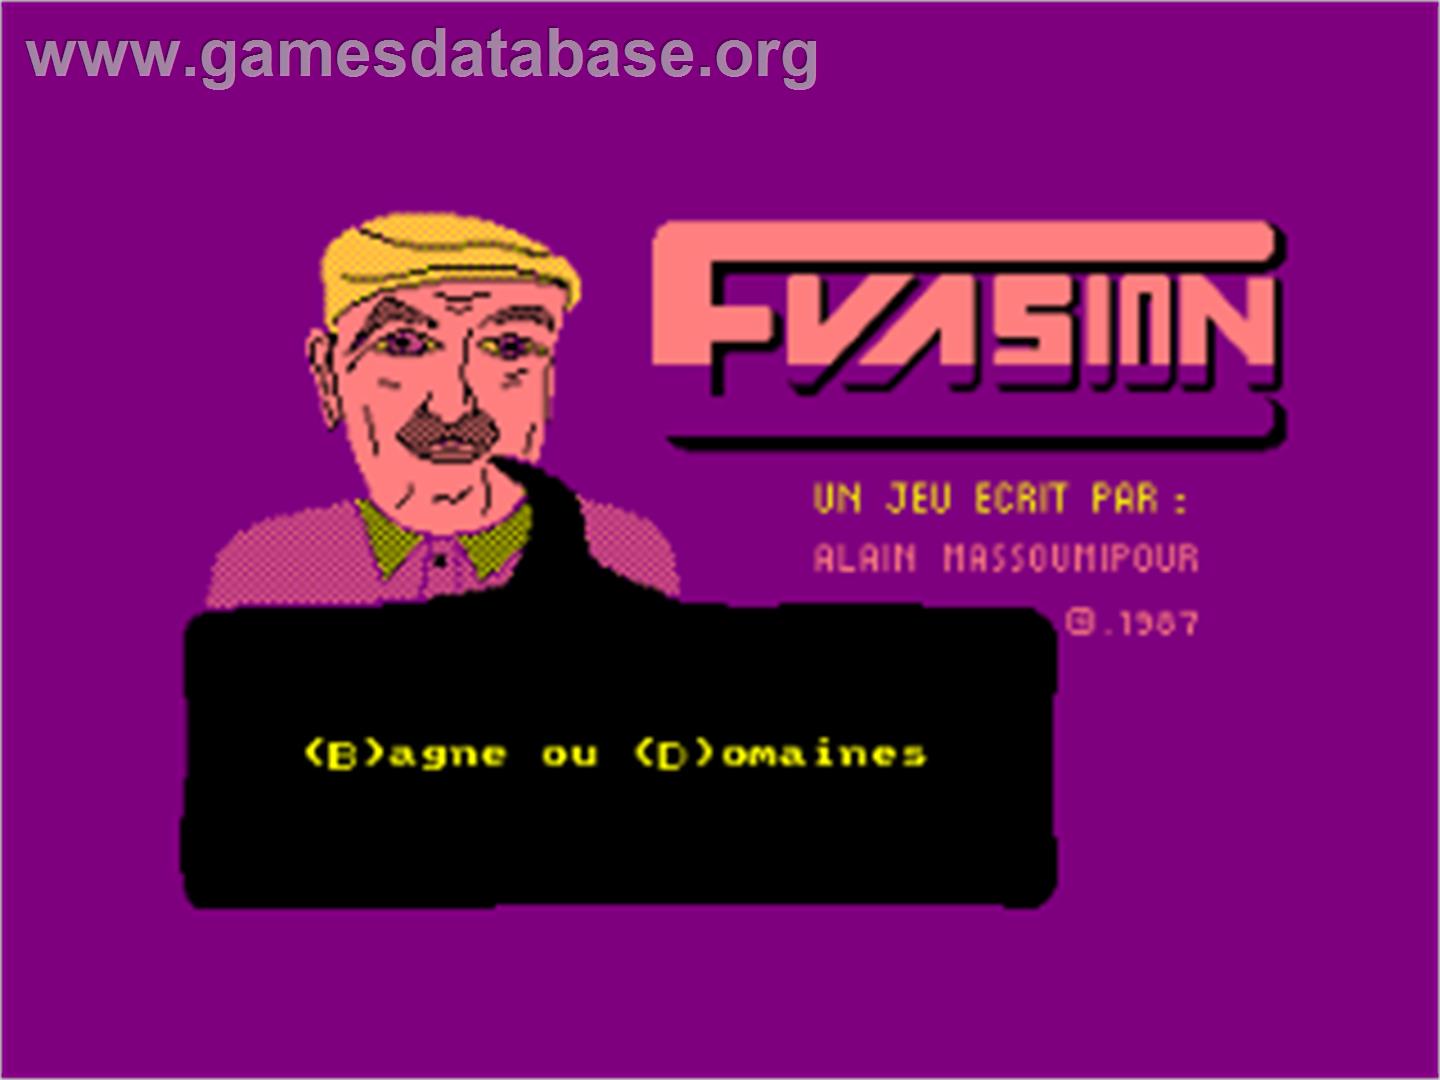 Invasion - Amstrad CPC - Artwork - Title Screen